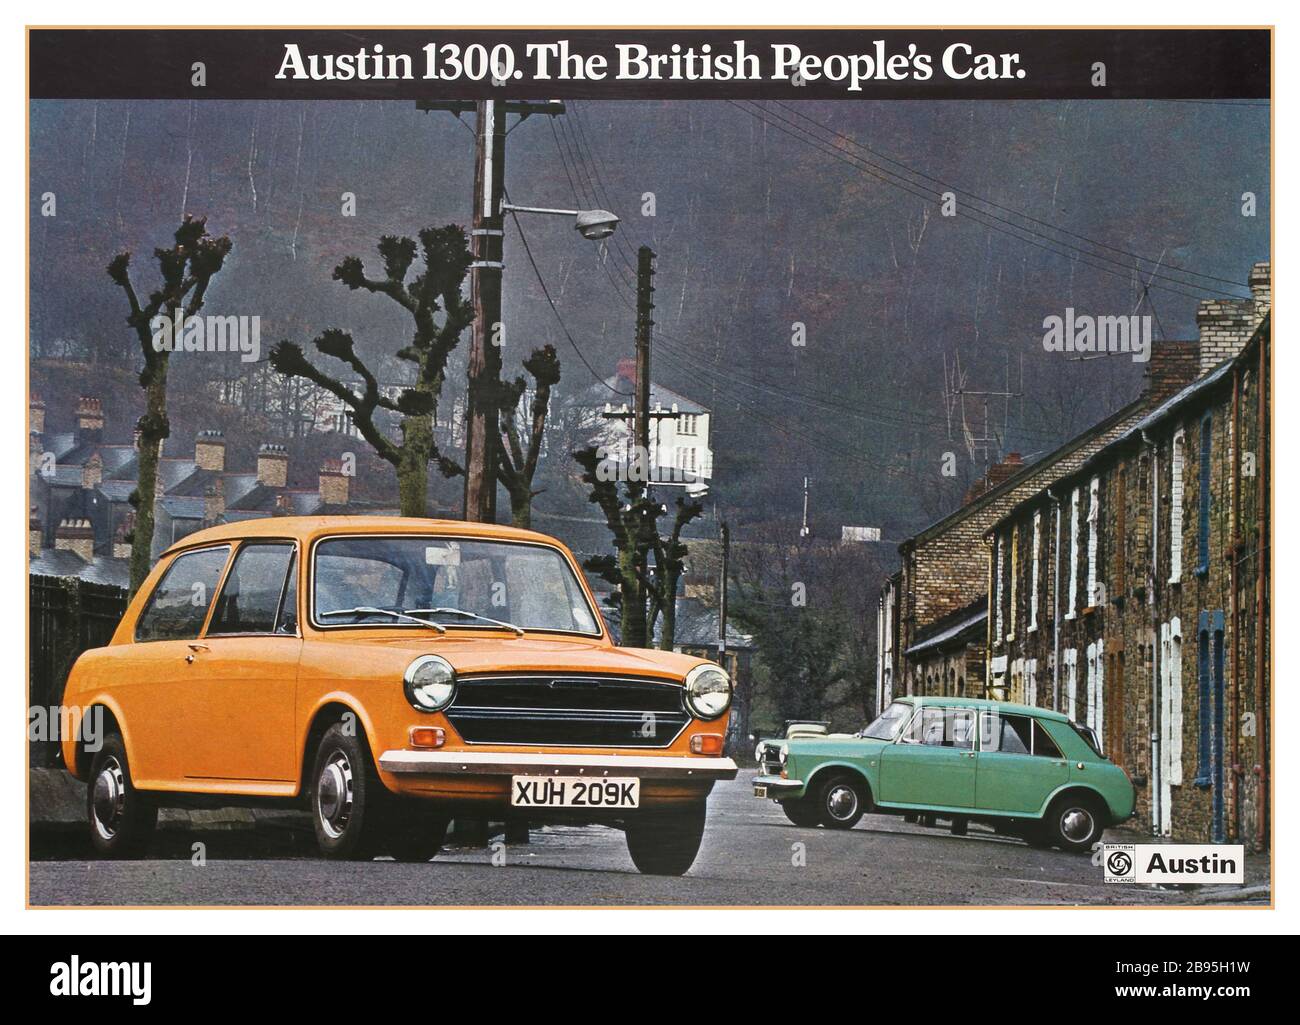 Vintage 1970 affiche publicitaire automobile britannique Austin 1300. La voiture du peuple britannique. Affiche une image couleur de deux Austin 1300 (modèle jaune à trois portes et modèle vert à cinq portes sur la droite) garée dans une rue. Le Austin 1300, fabriqué par British Leyland, faisait partie d'une gamme de petites voitures familiales, construites par la British Motor Corporation (BMC) plus tard British Leyland sous le nom de BMC Banque D'Images